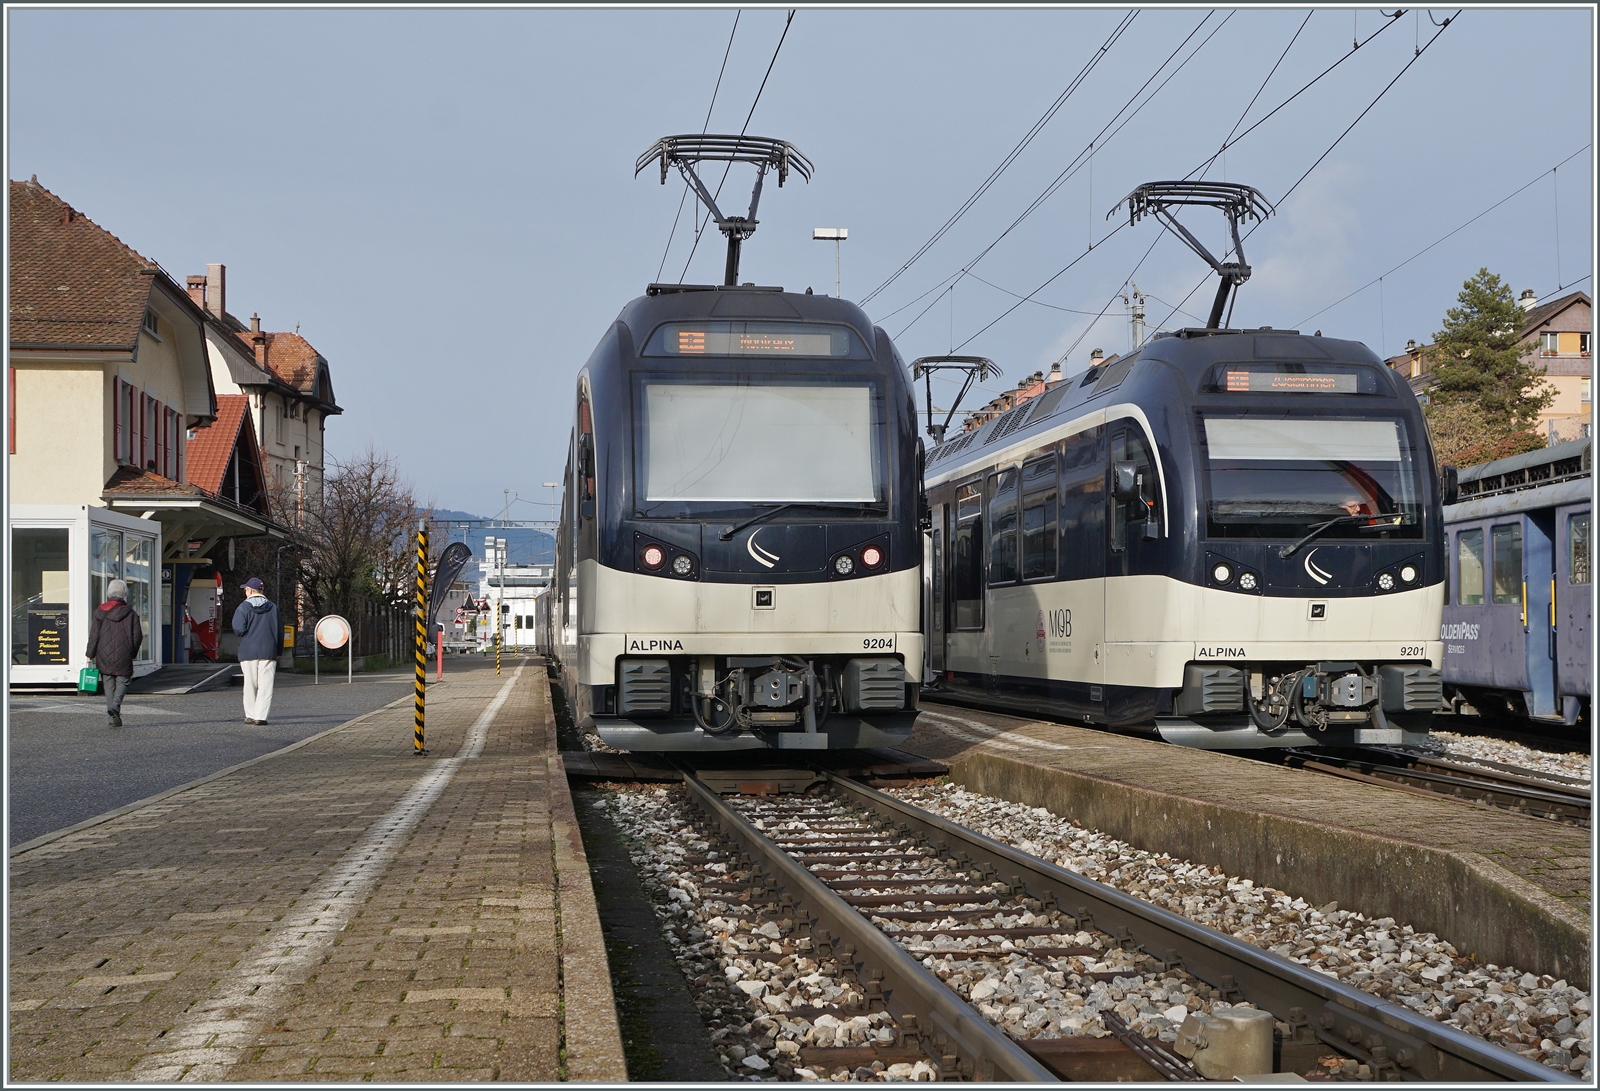 In Chernex kreuzen sich die Golden Pass Panoramic Züge Zweisimmen - Montreux (links) und Montreux - Zweisimmen (rechts) mit den Alpina ABe 4/4 9304 am Schluss, bzw dem ABe 4/4 9301 an der Spitze. 

4. Januar 2023